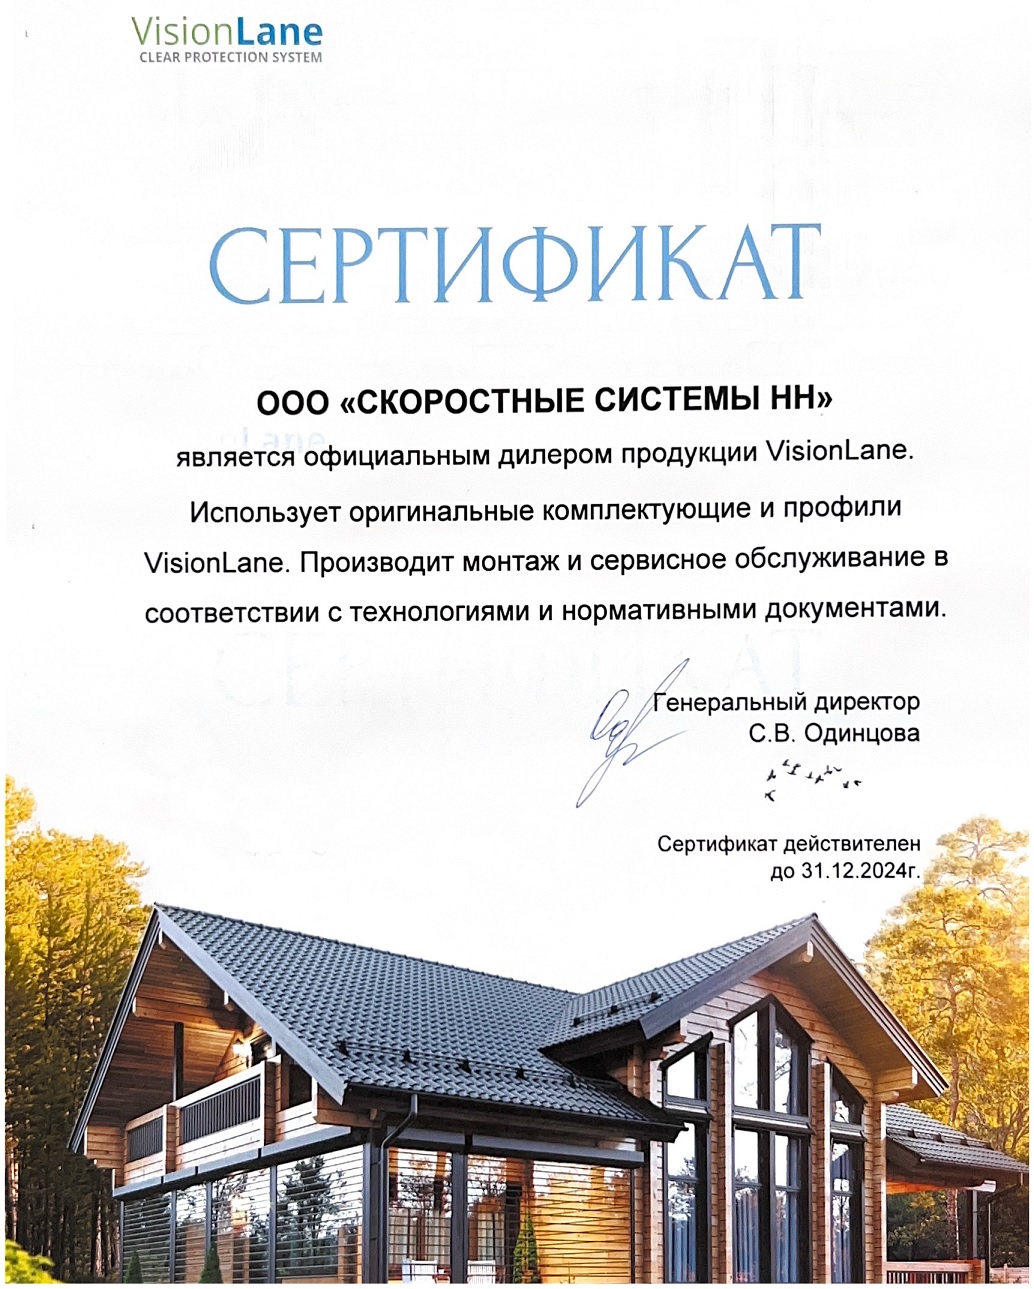 Сертификат на продукцию VisionLane